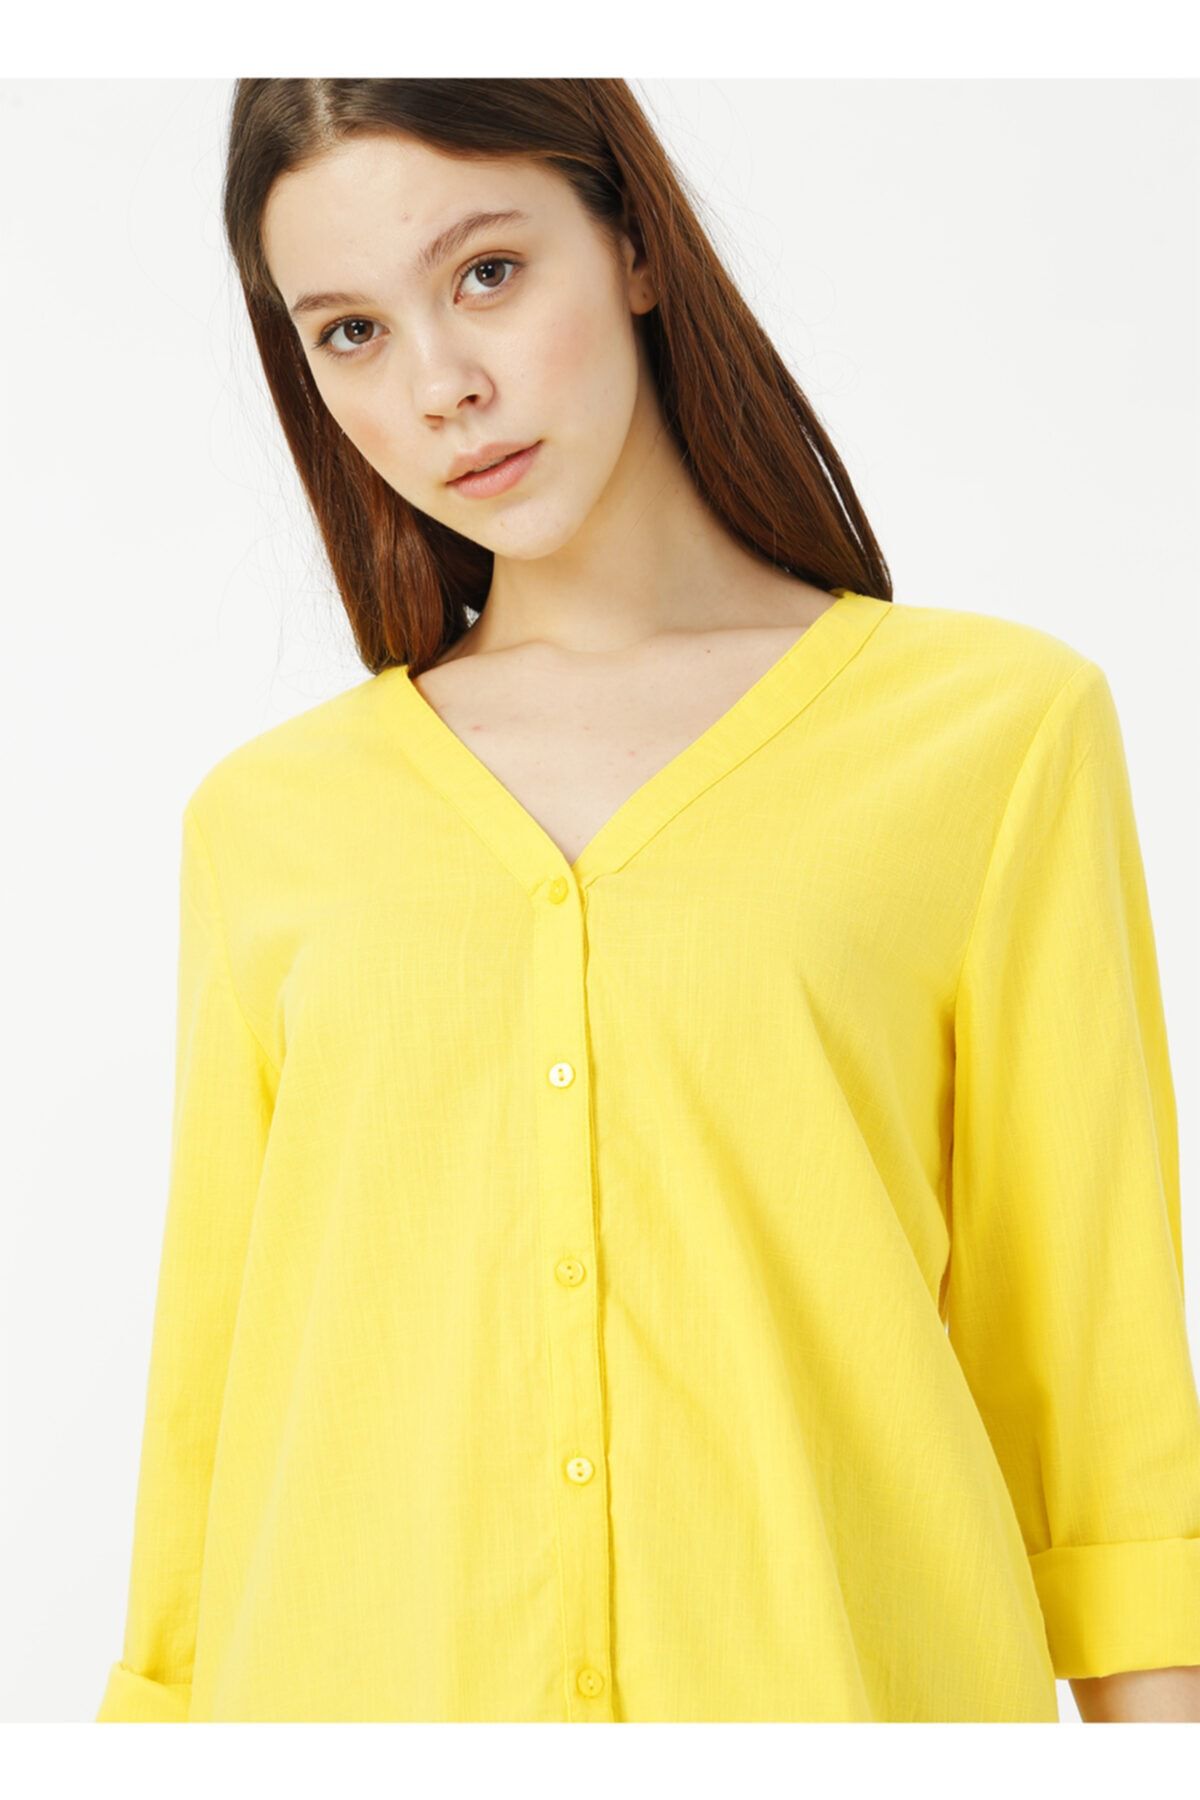 LİMON COMPANY Limon Sarı Kadın Gömlek